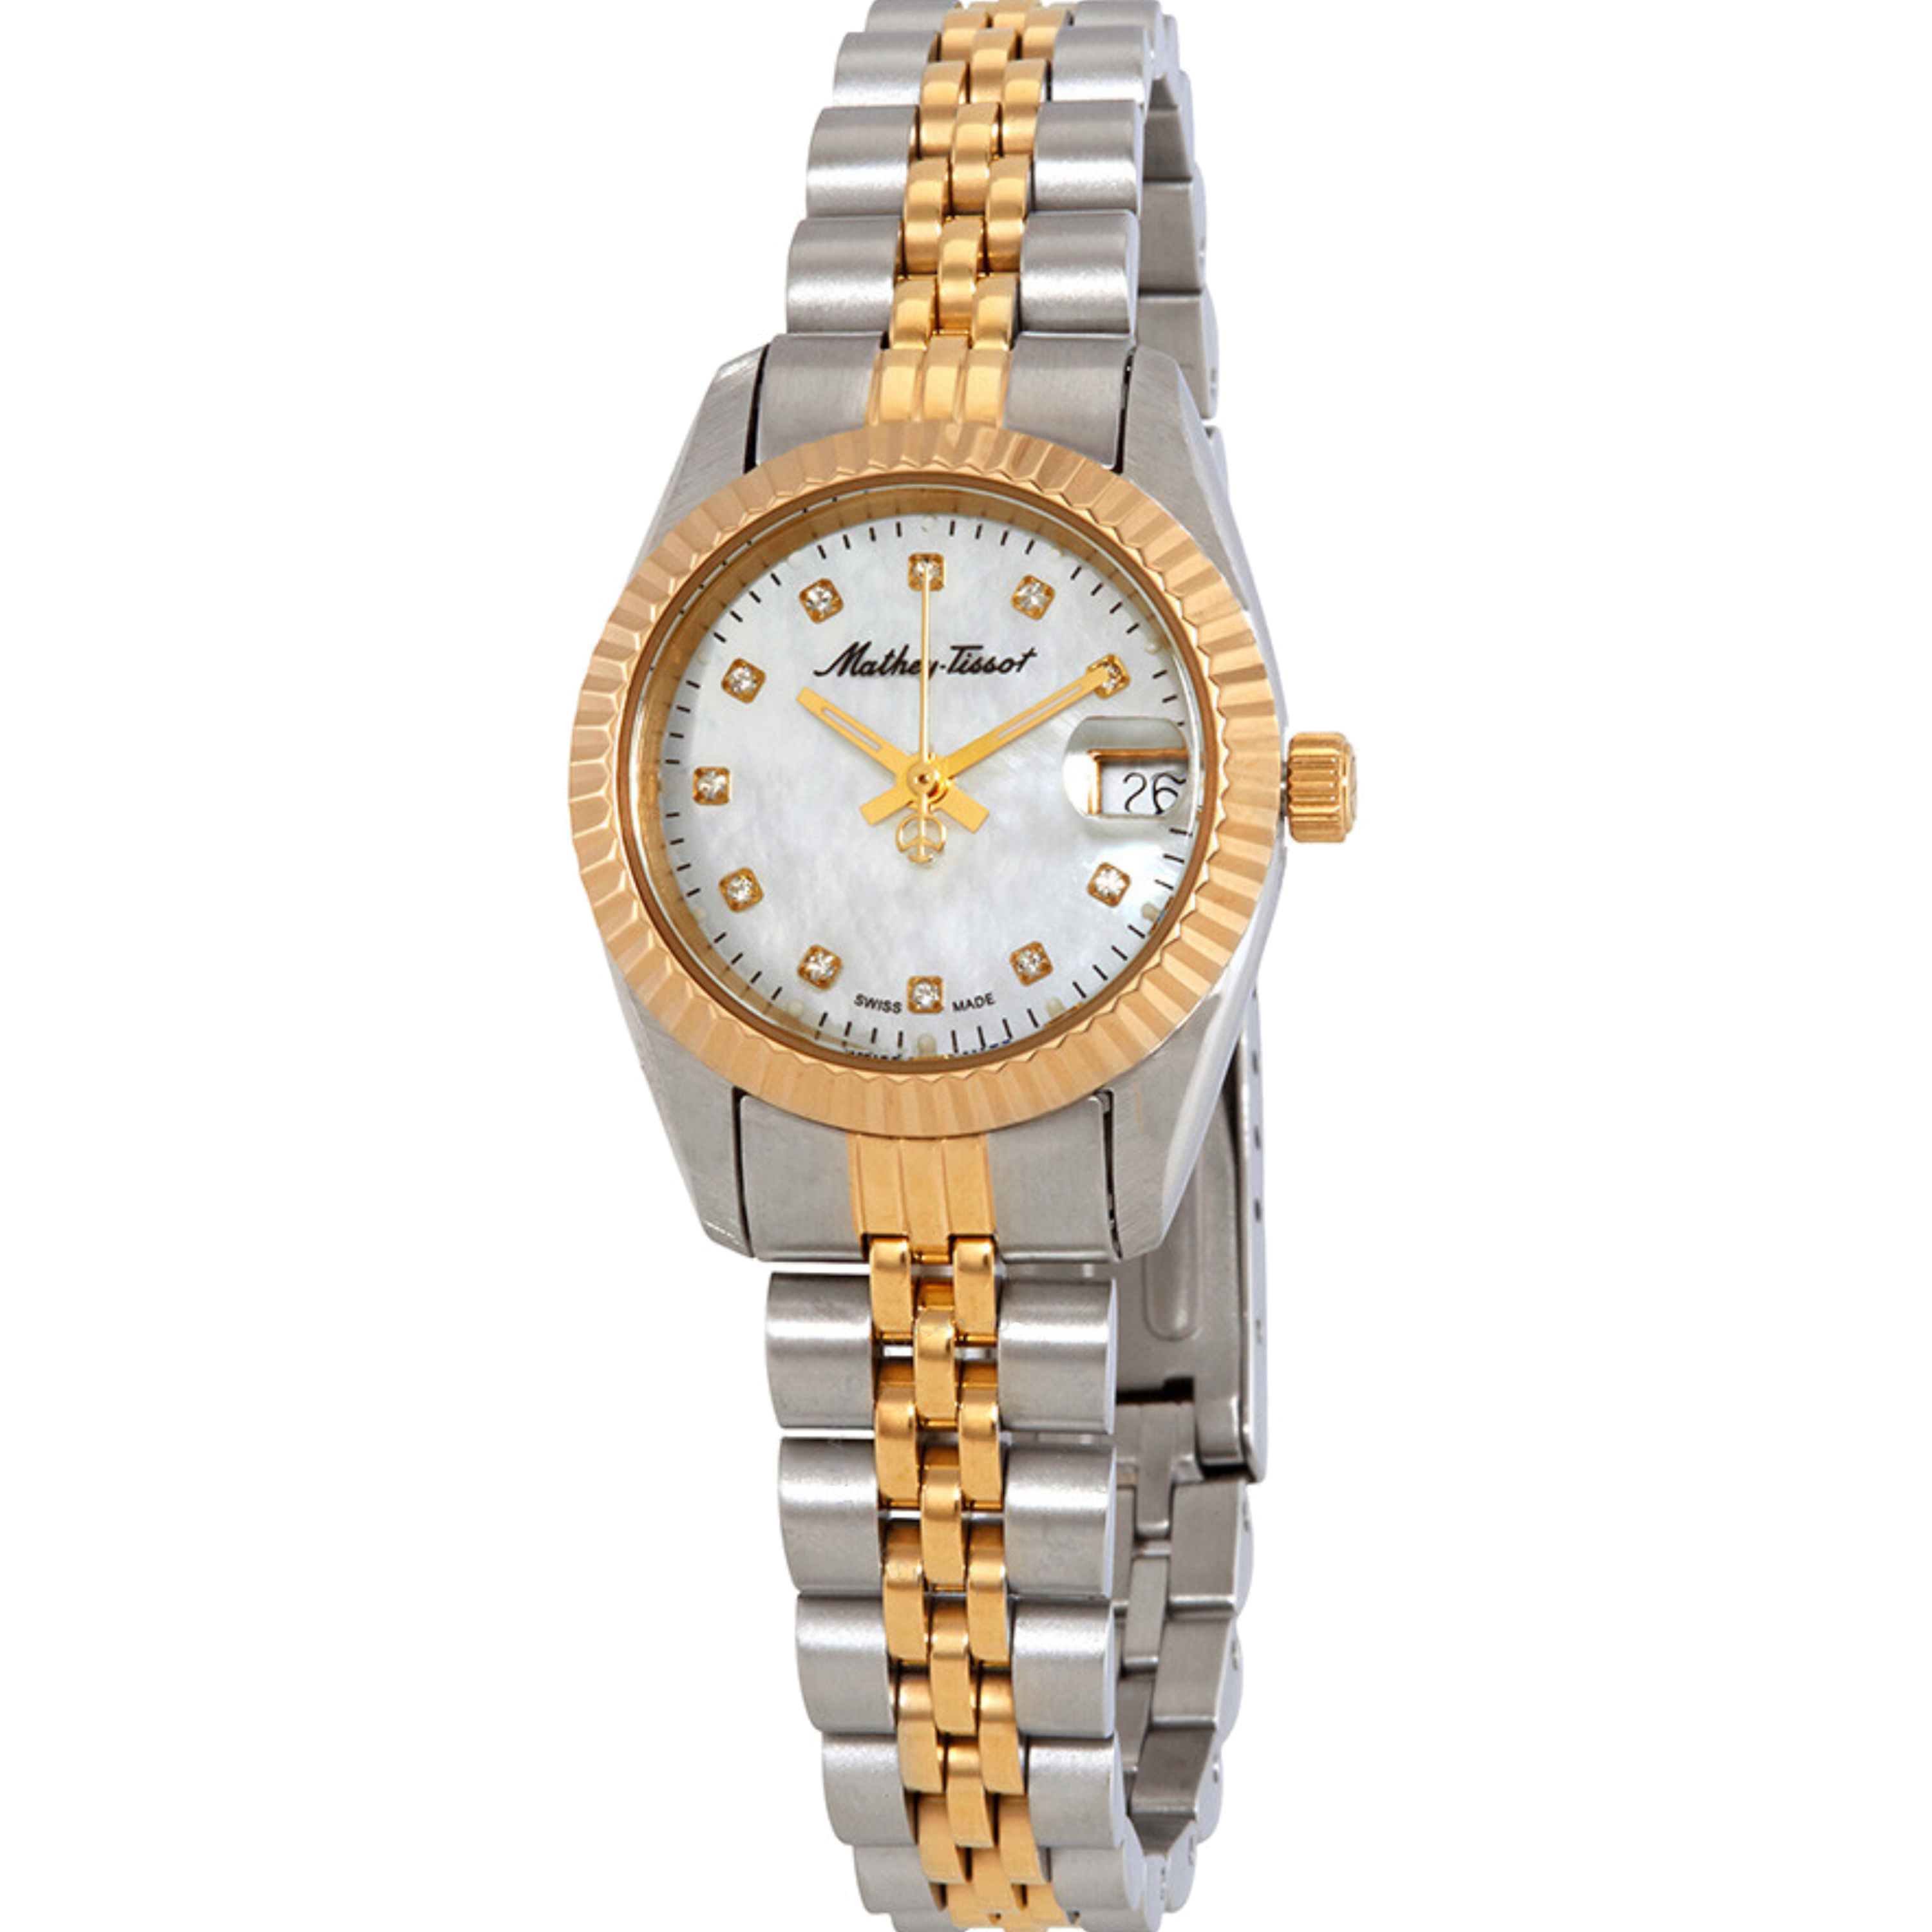 שעון יד לאישה Mathey Tissot D710BI 26mm צבע כסף/זהב - אחריות לשנה ע"י היבואן